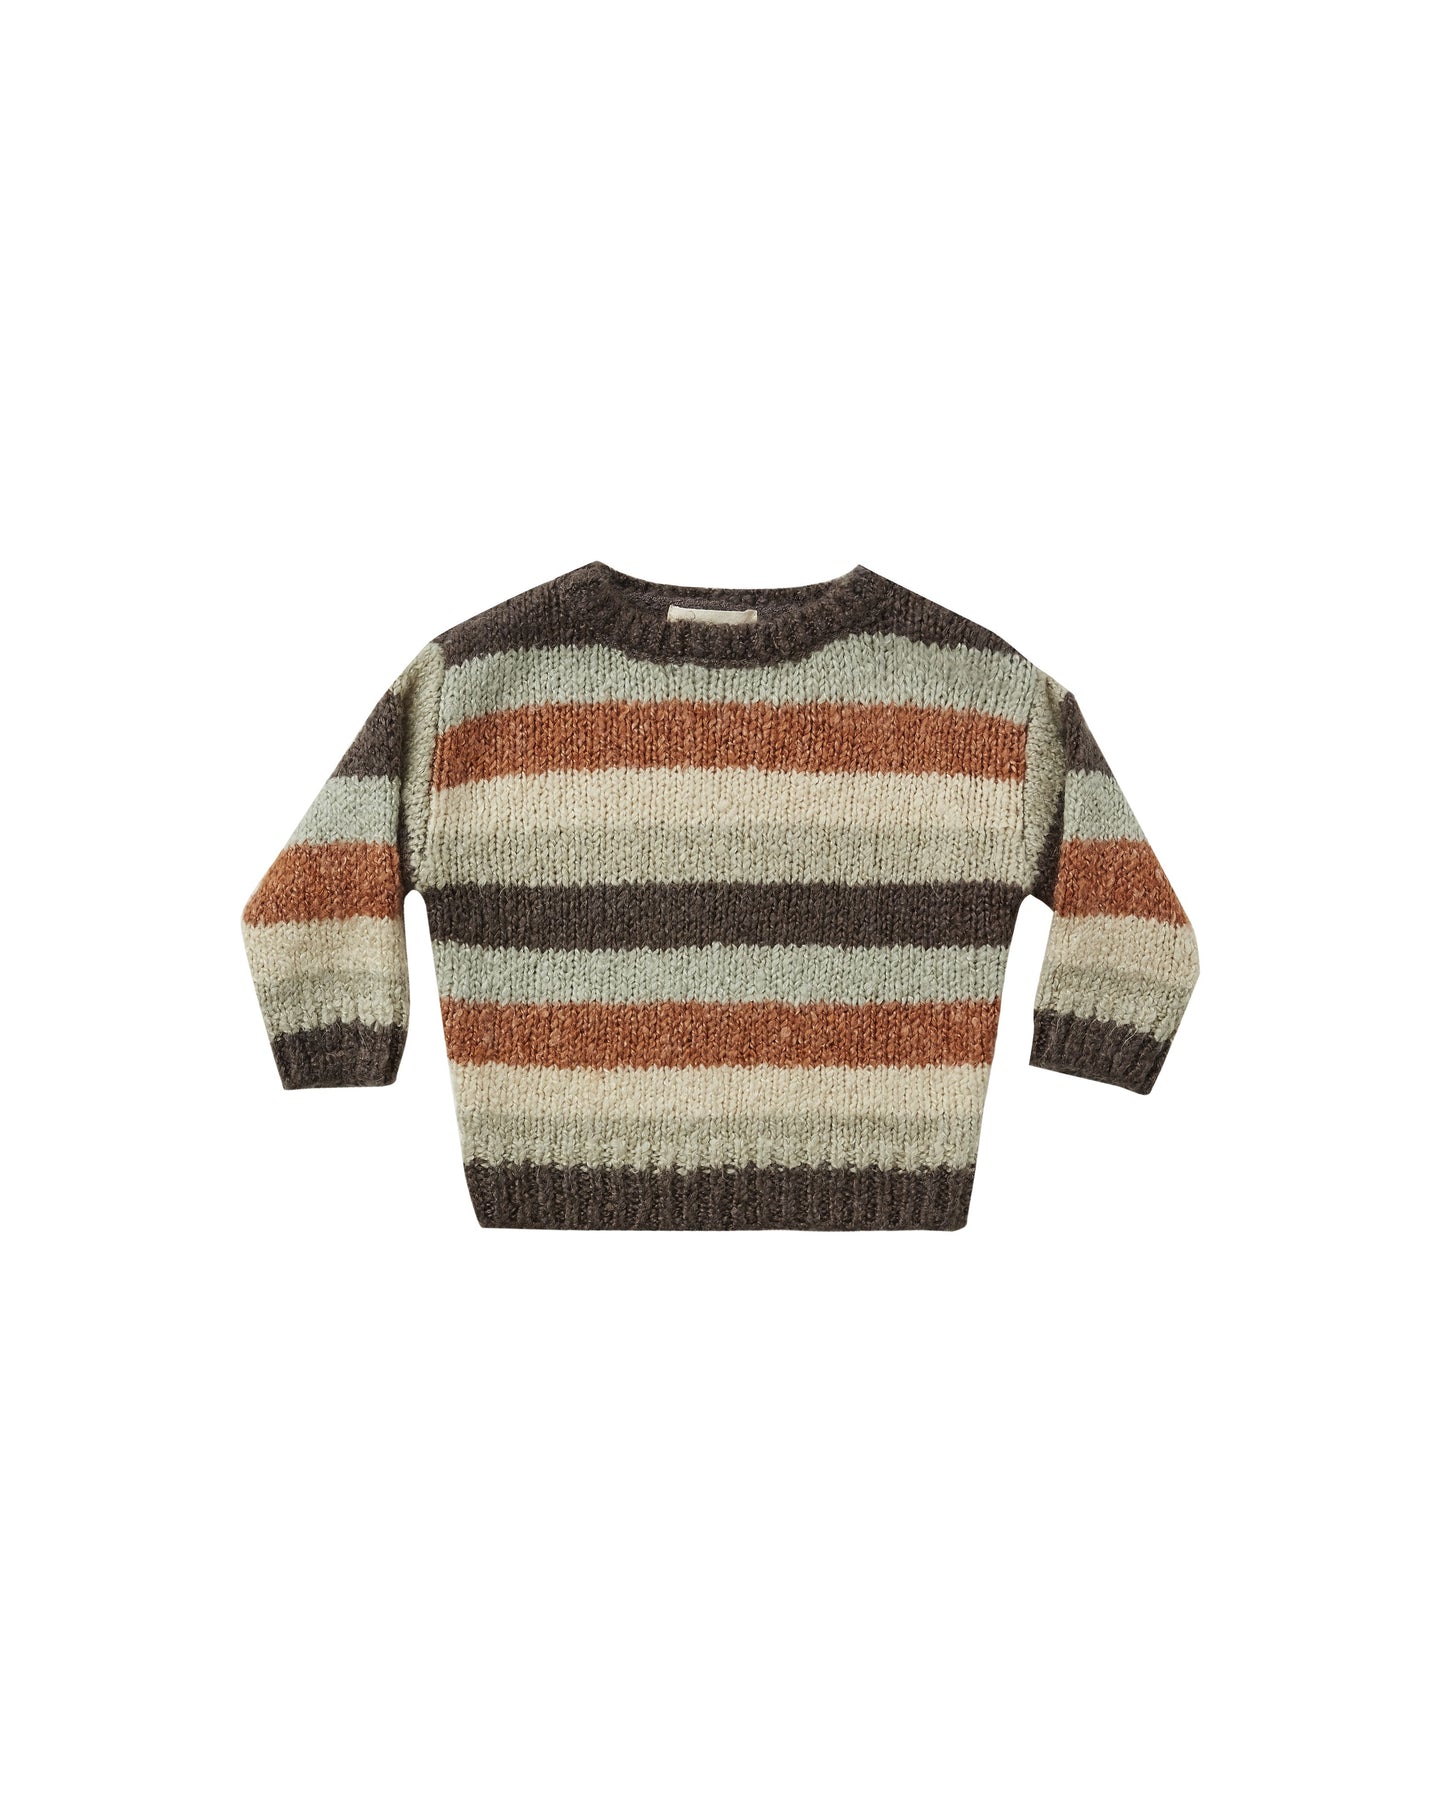 Rylee + Cru - Aspen Sweater - Multi Stripe